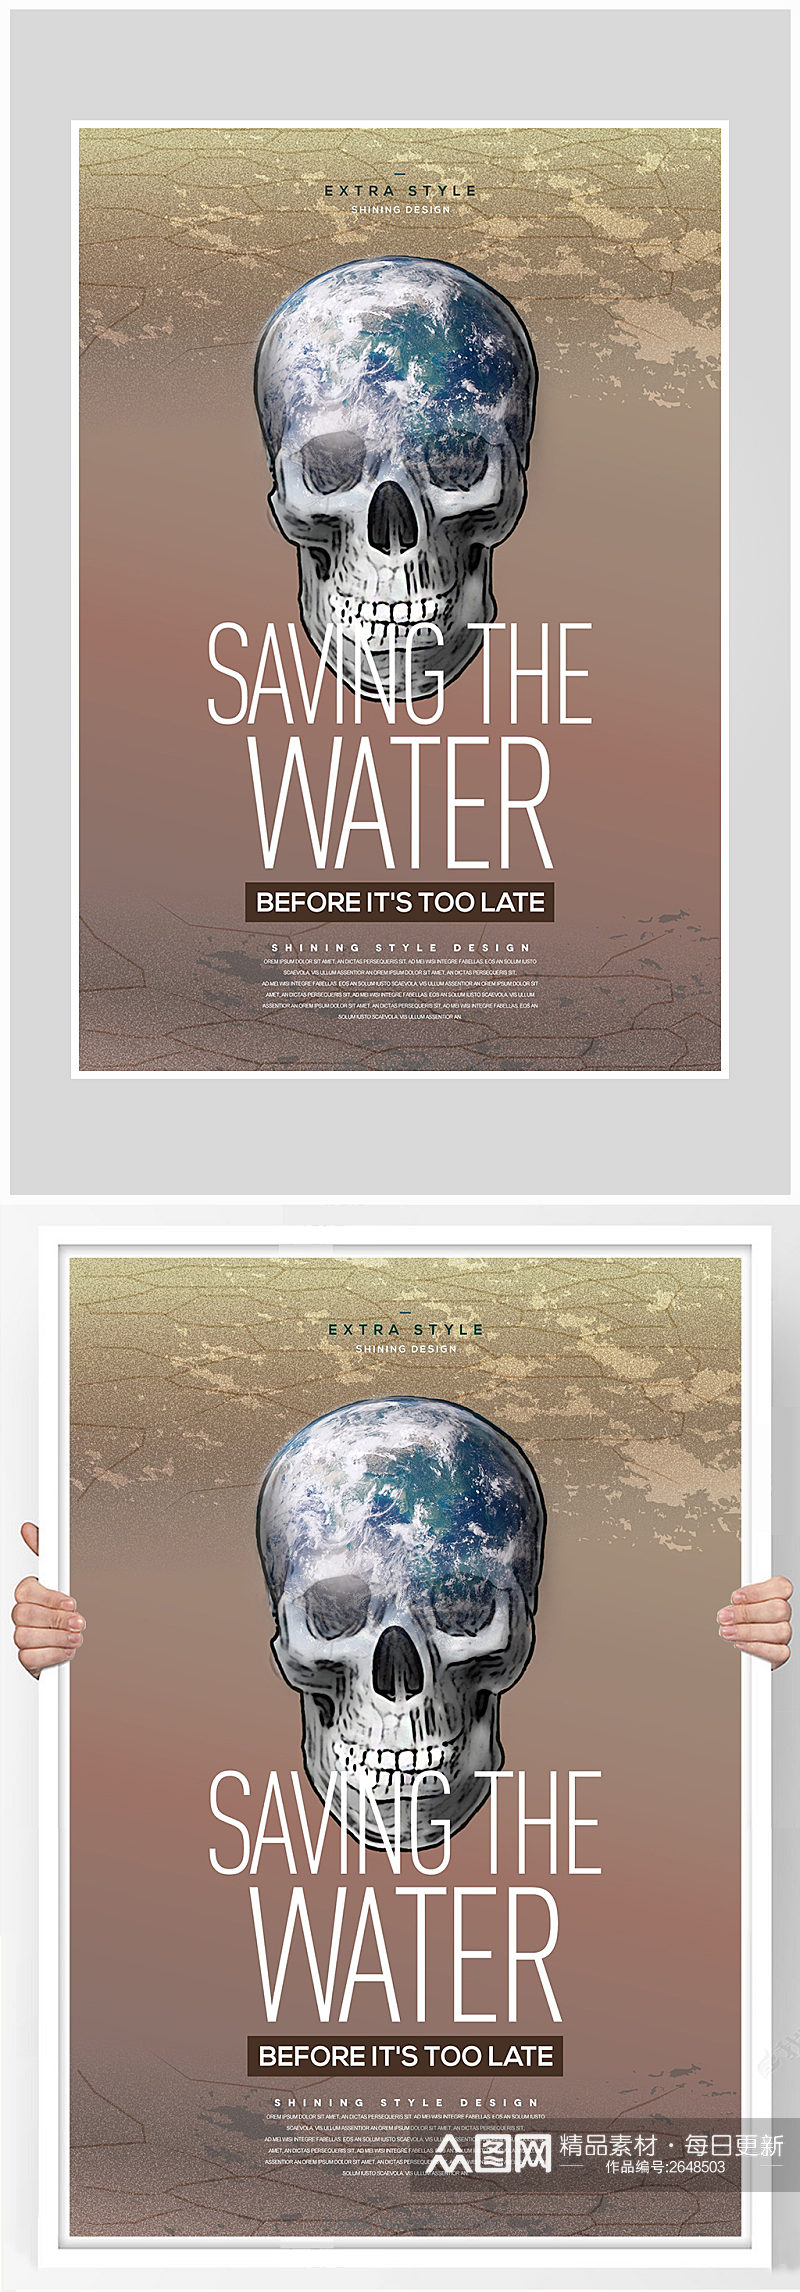 创意保护环境珍稀水资源海报设计素材